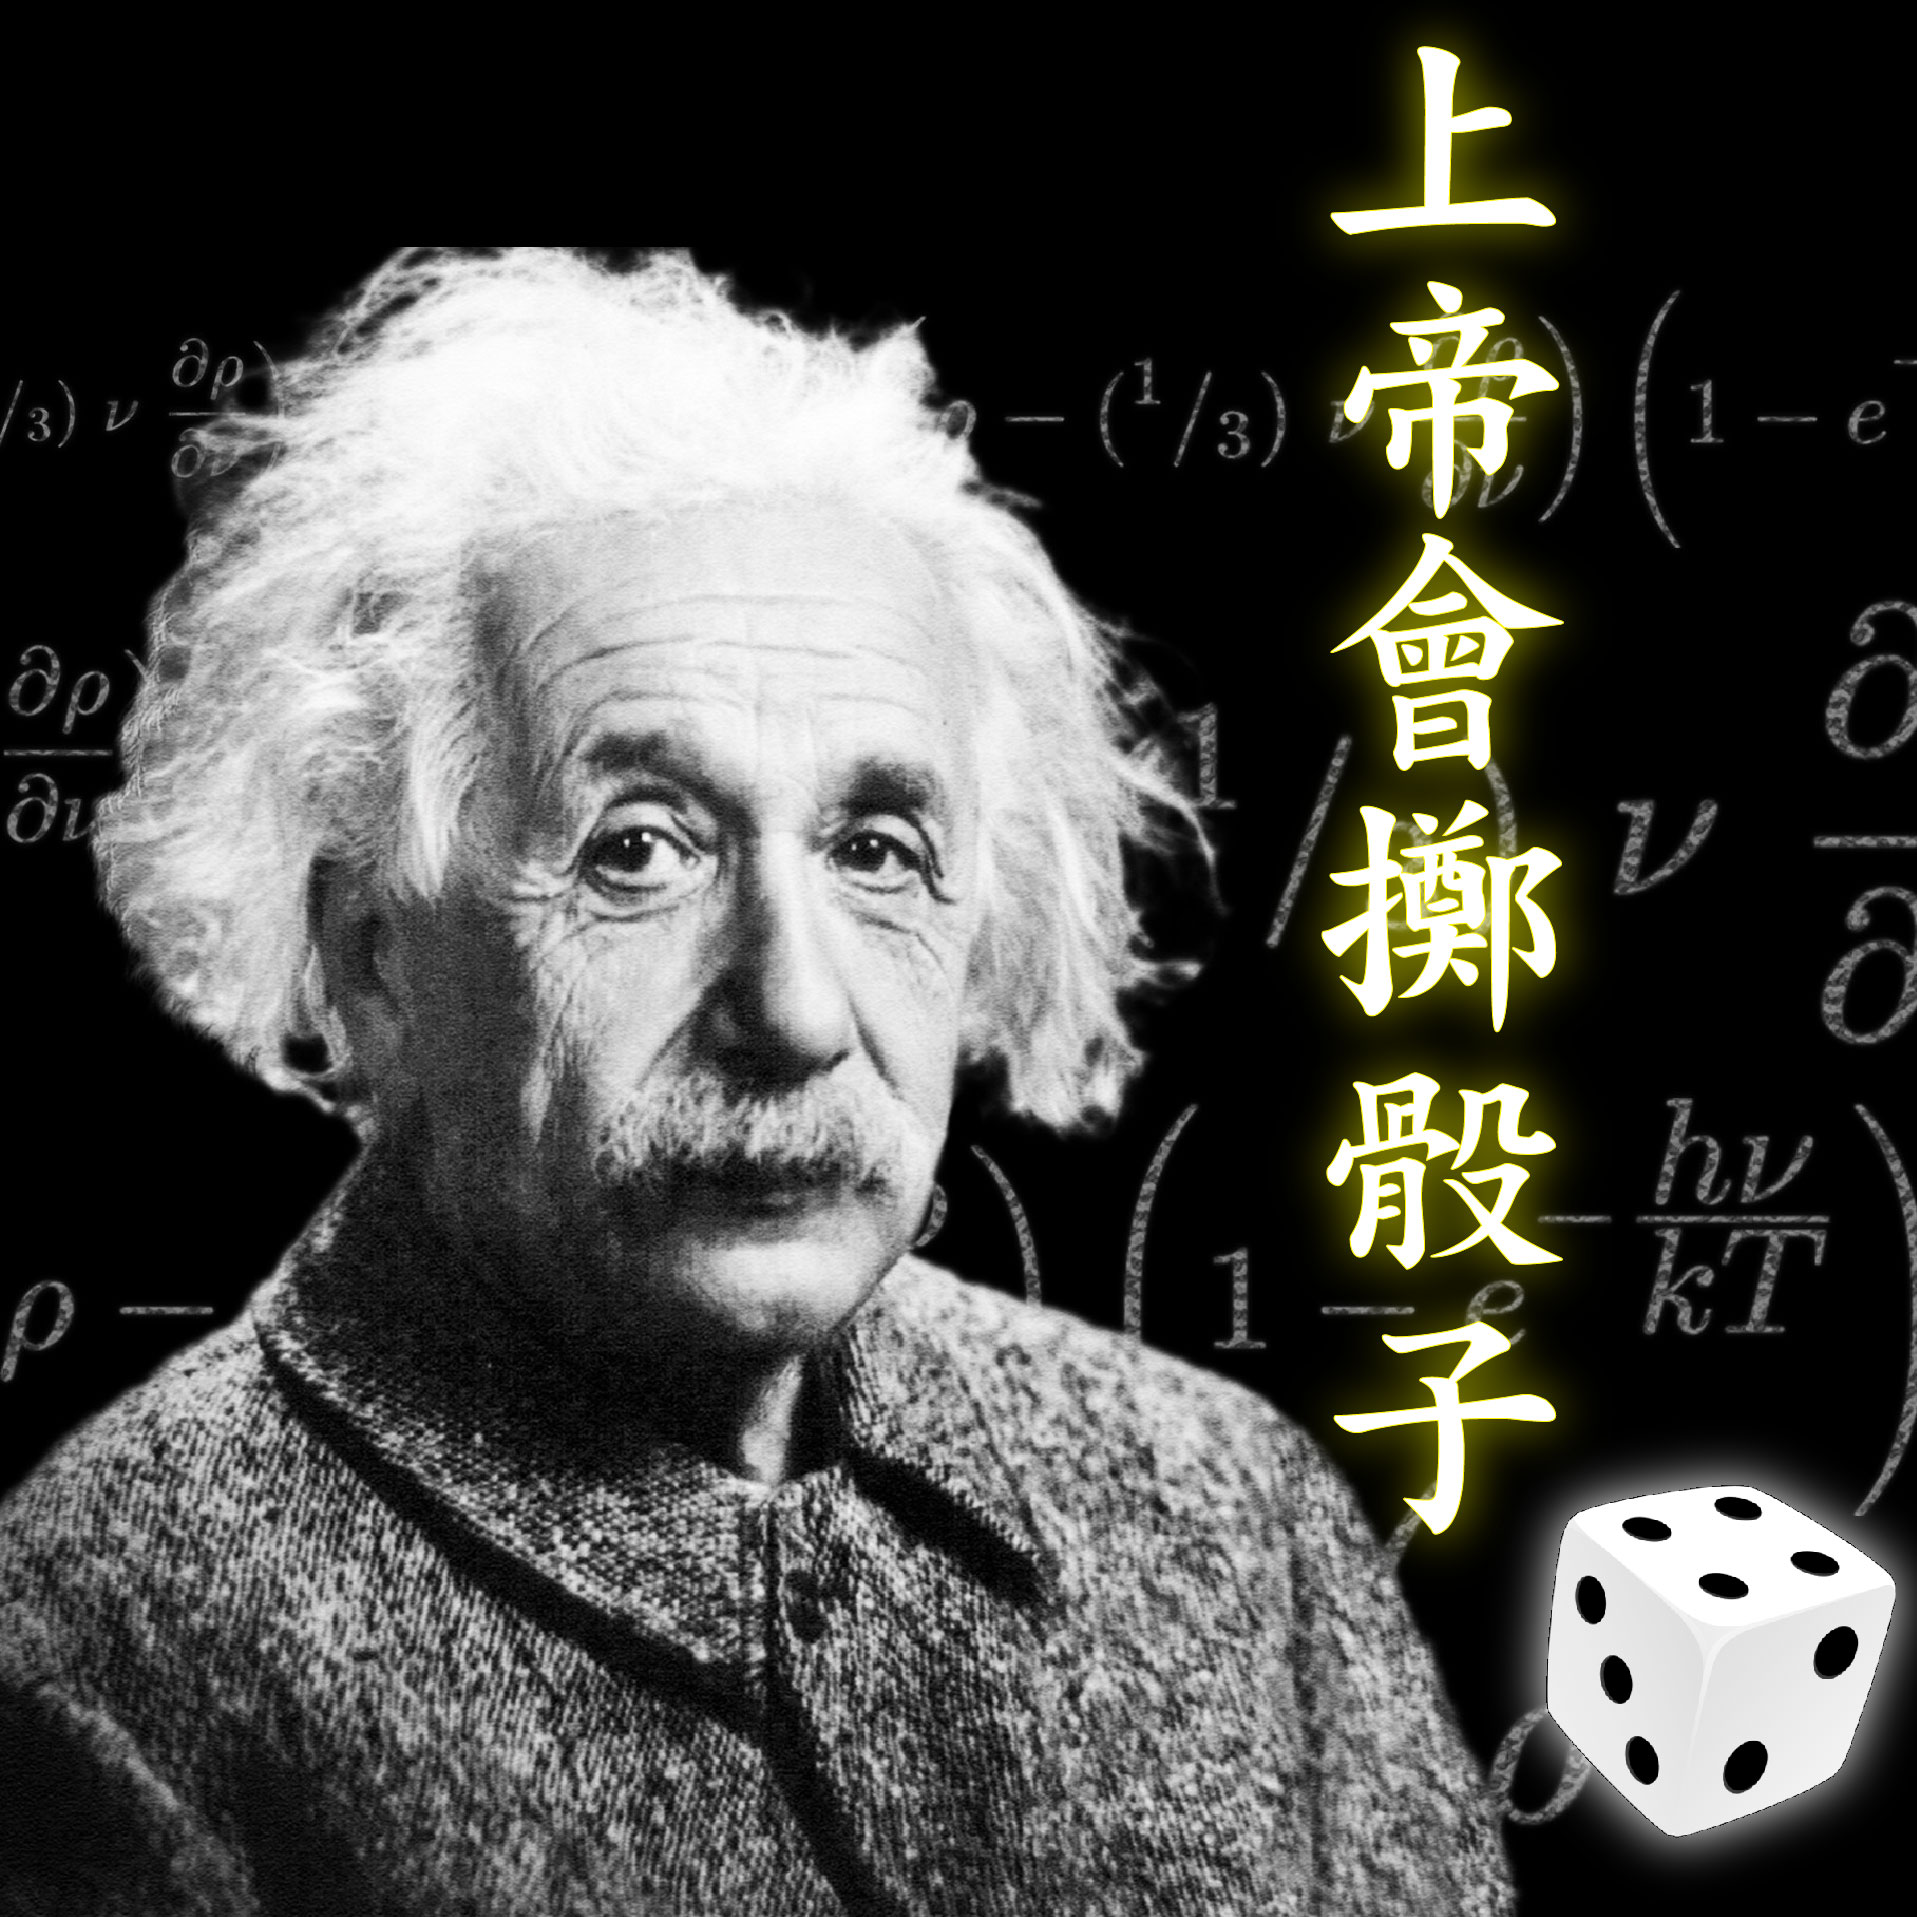 愛因斯坦畢生最大的錯誤就是不相信神的存在